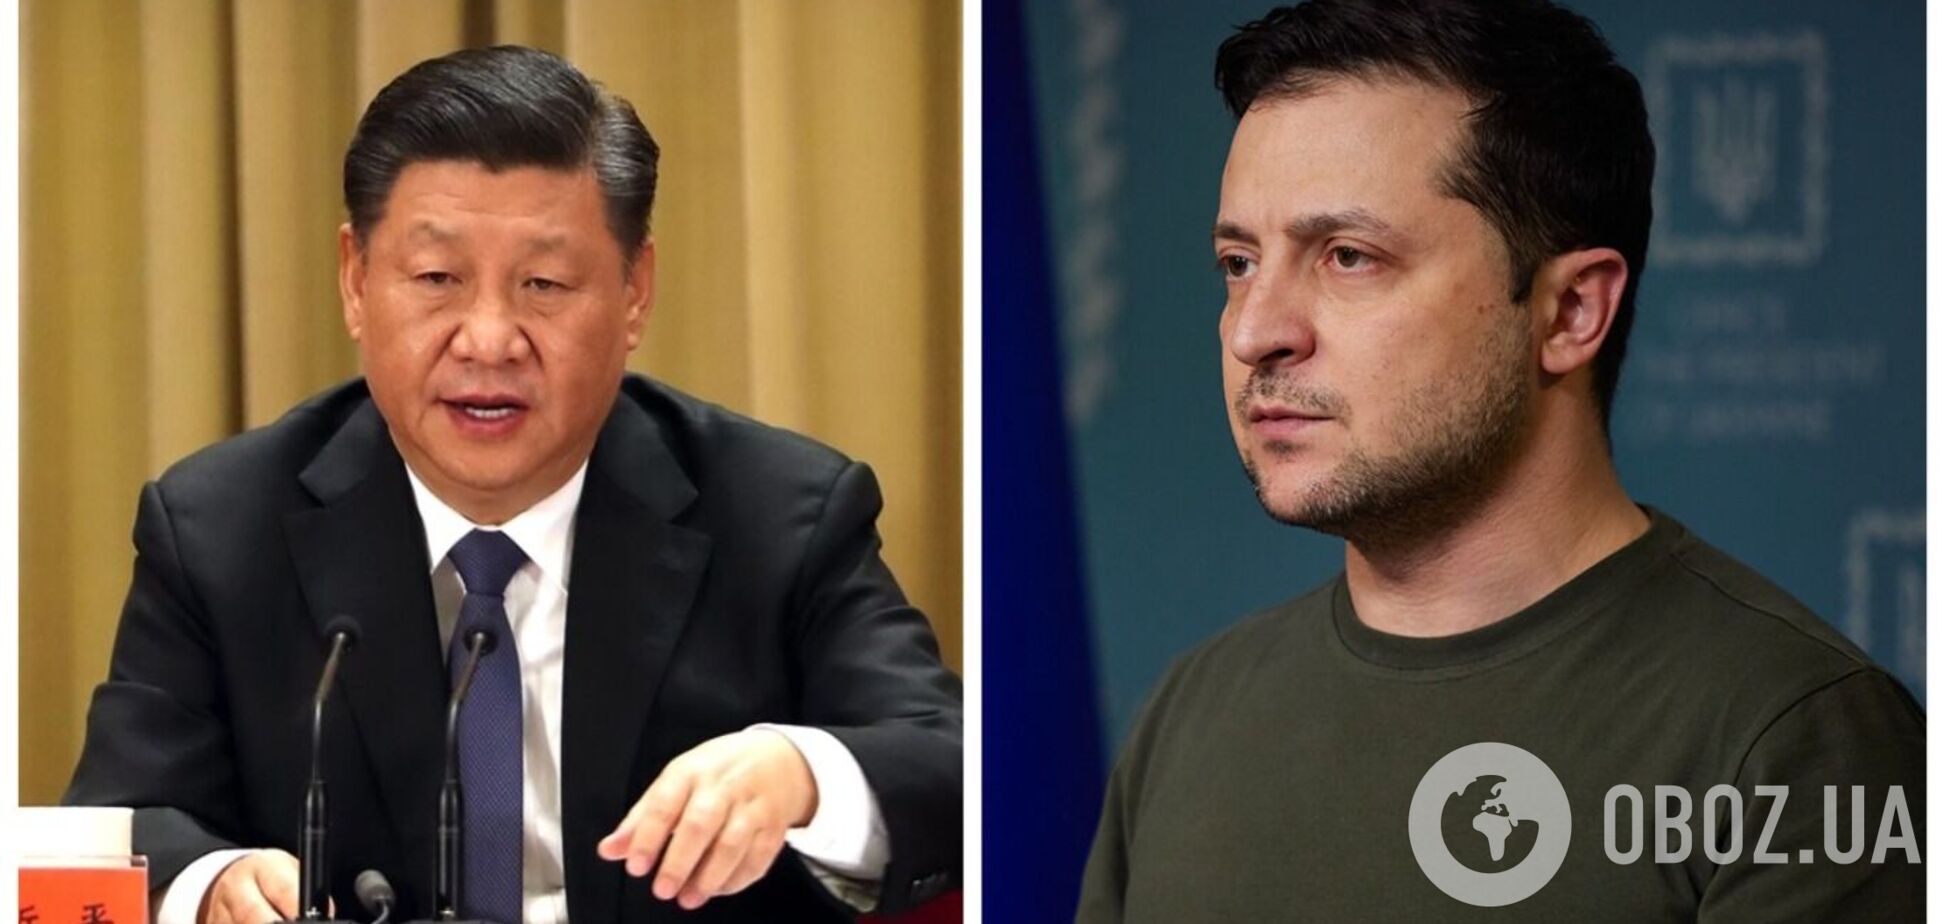 'Позиція Пекіна дуже послідовна і чітка': у Китаї відреагували на слова Зеленського щодо бажання зустрітися із Сі Цзіньпіном